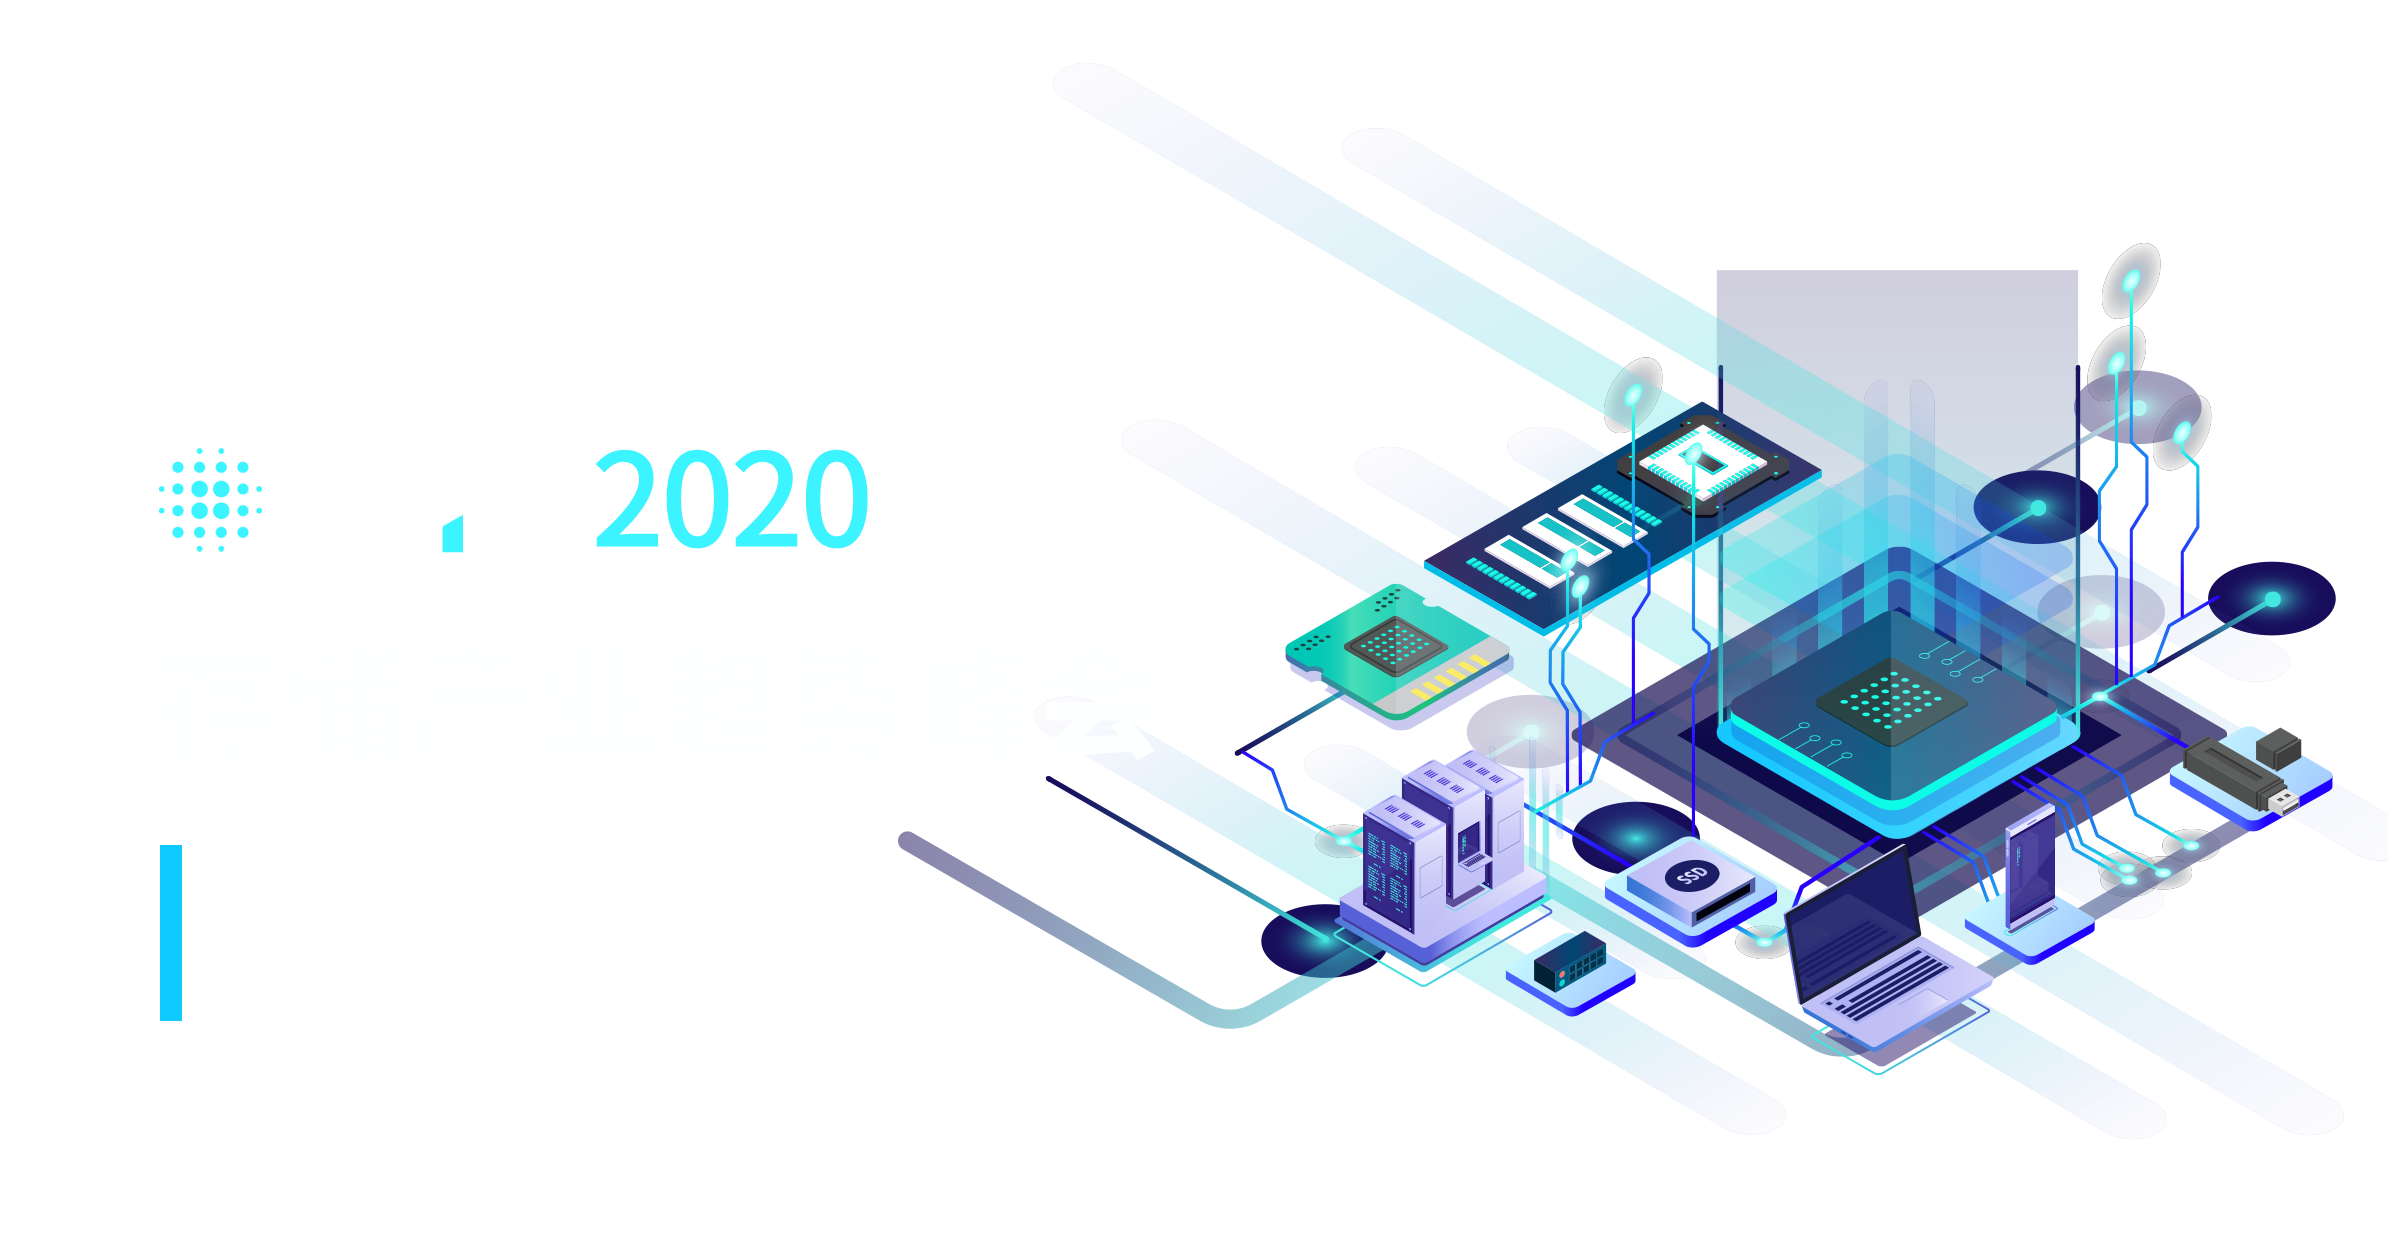 MTS 2020